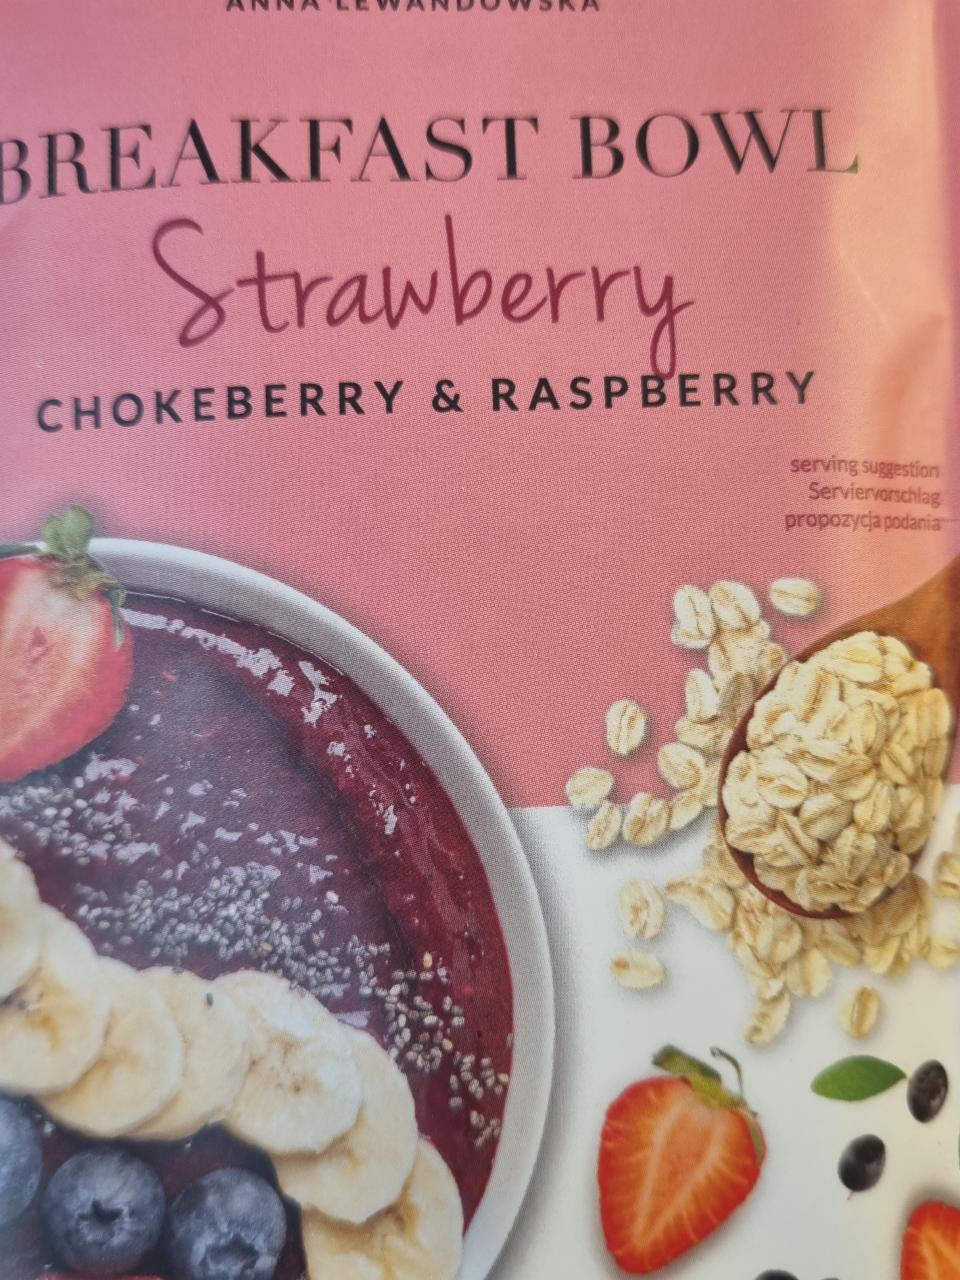 Zdjęcia - Breakfast Bowl strawberry anna lewandowska